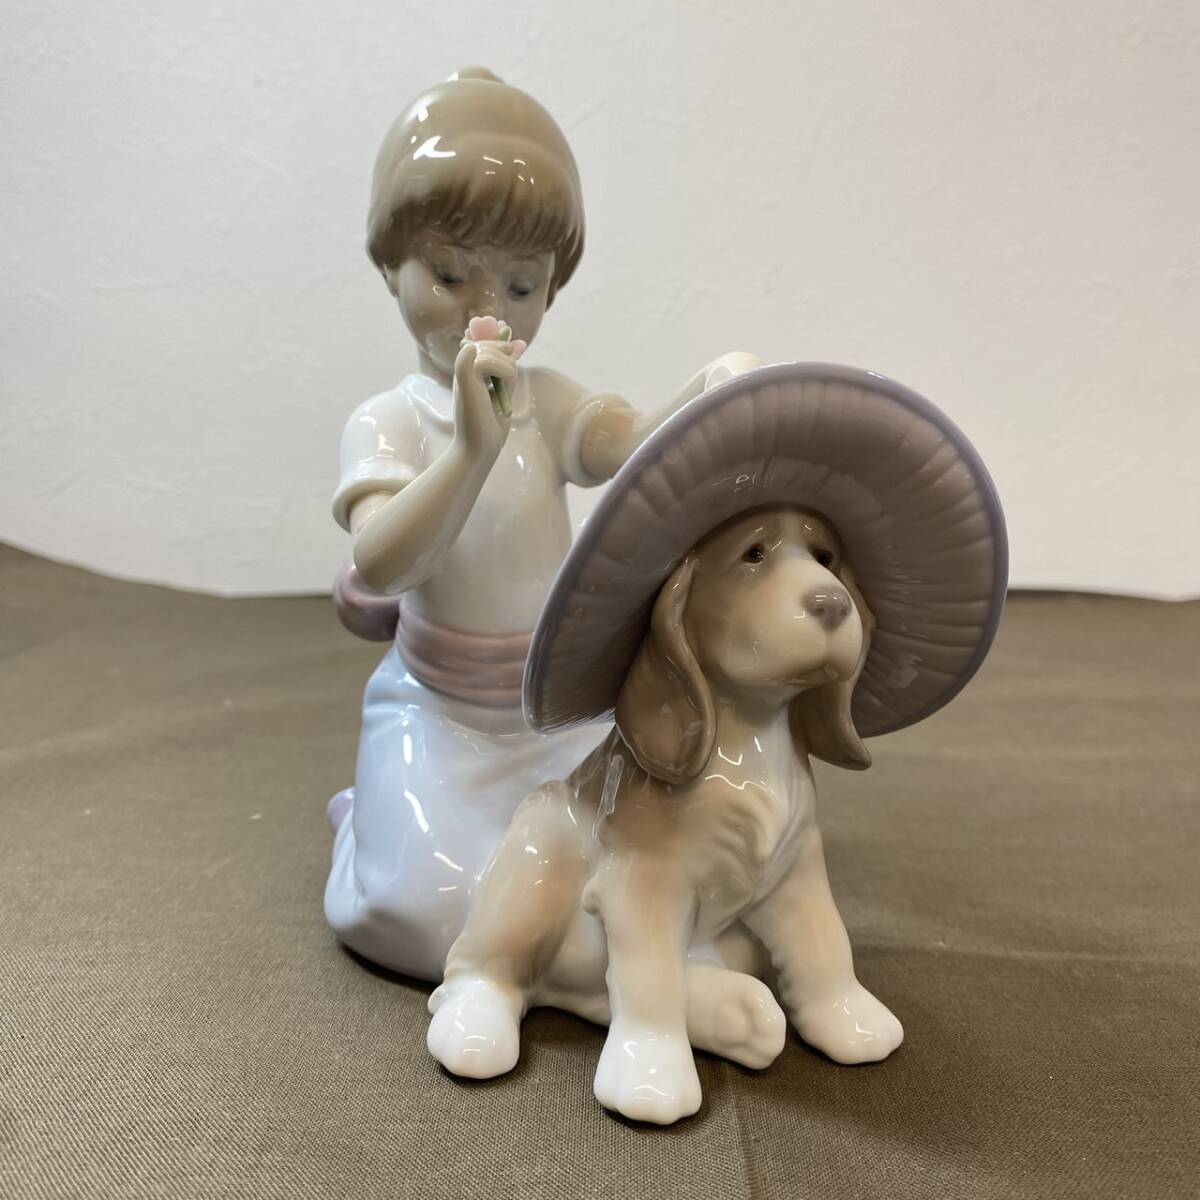 【MH-7236】中古品 LLADRO リヤドロ おめかししようね 6862 少女と犬 少女 犬 陶器 フィギュリン 西洋陶器 人形 西洋磁器 置物の画像1